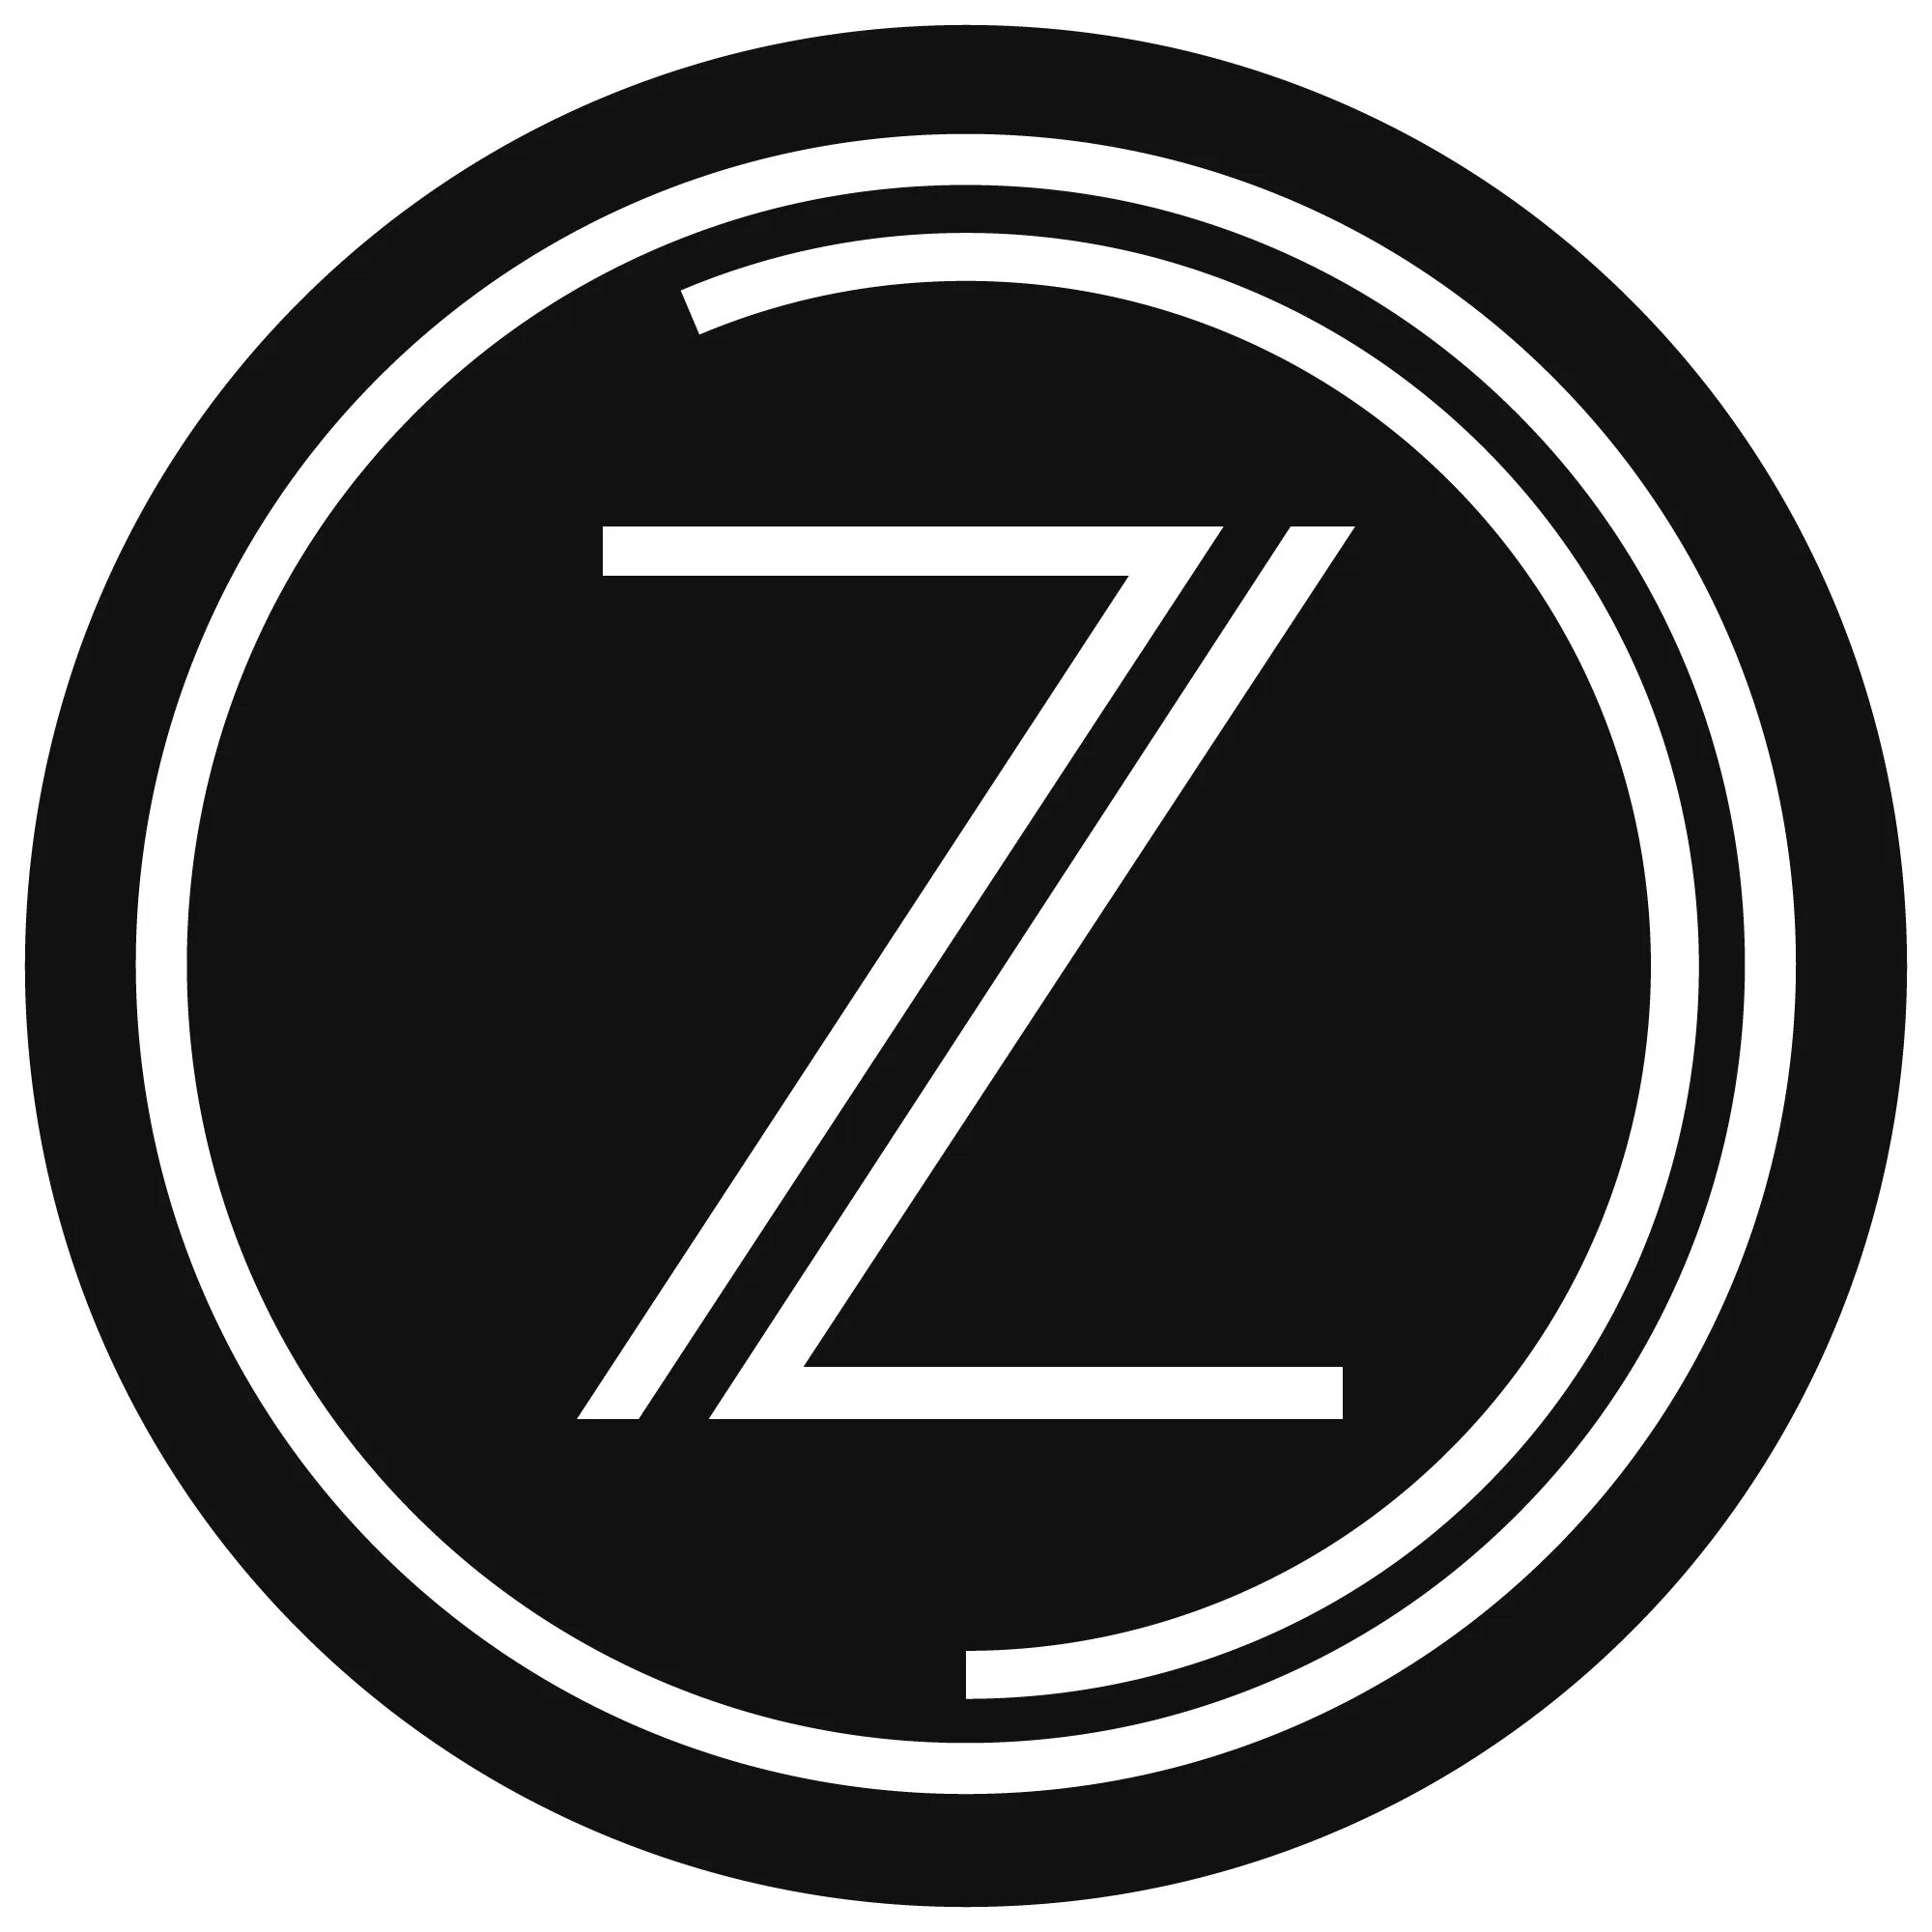 Символ z. Буква z. Значок с буквой z. Буква z в круге.